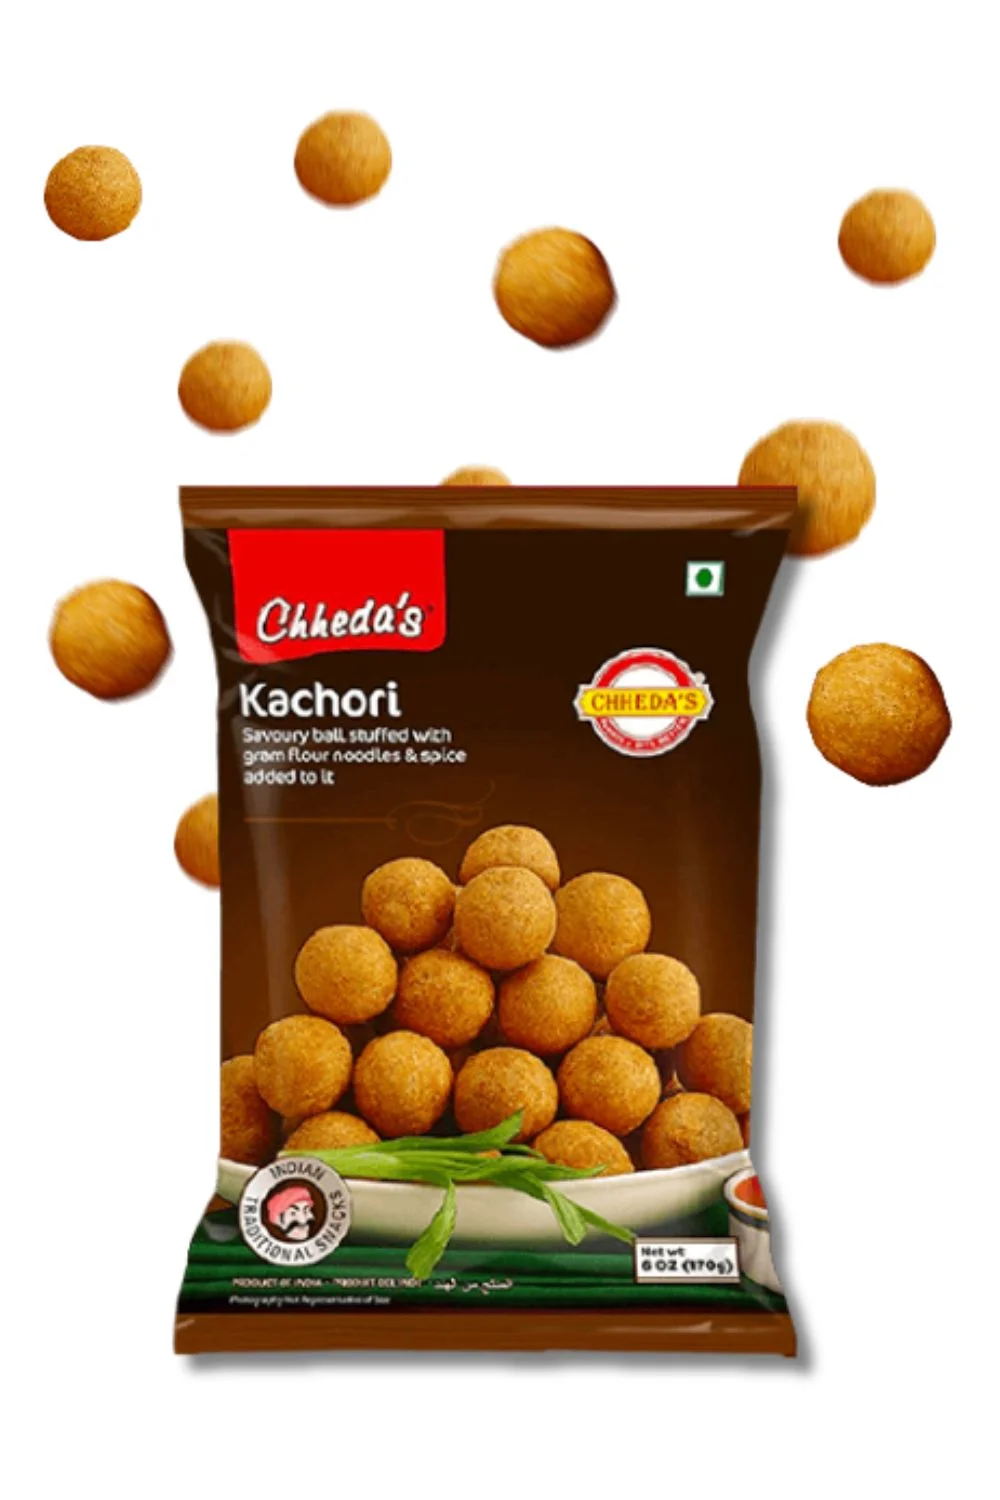 Chheda's – Mumbai's No.1 Snacks Brand